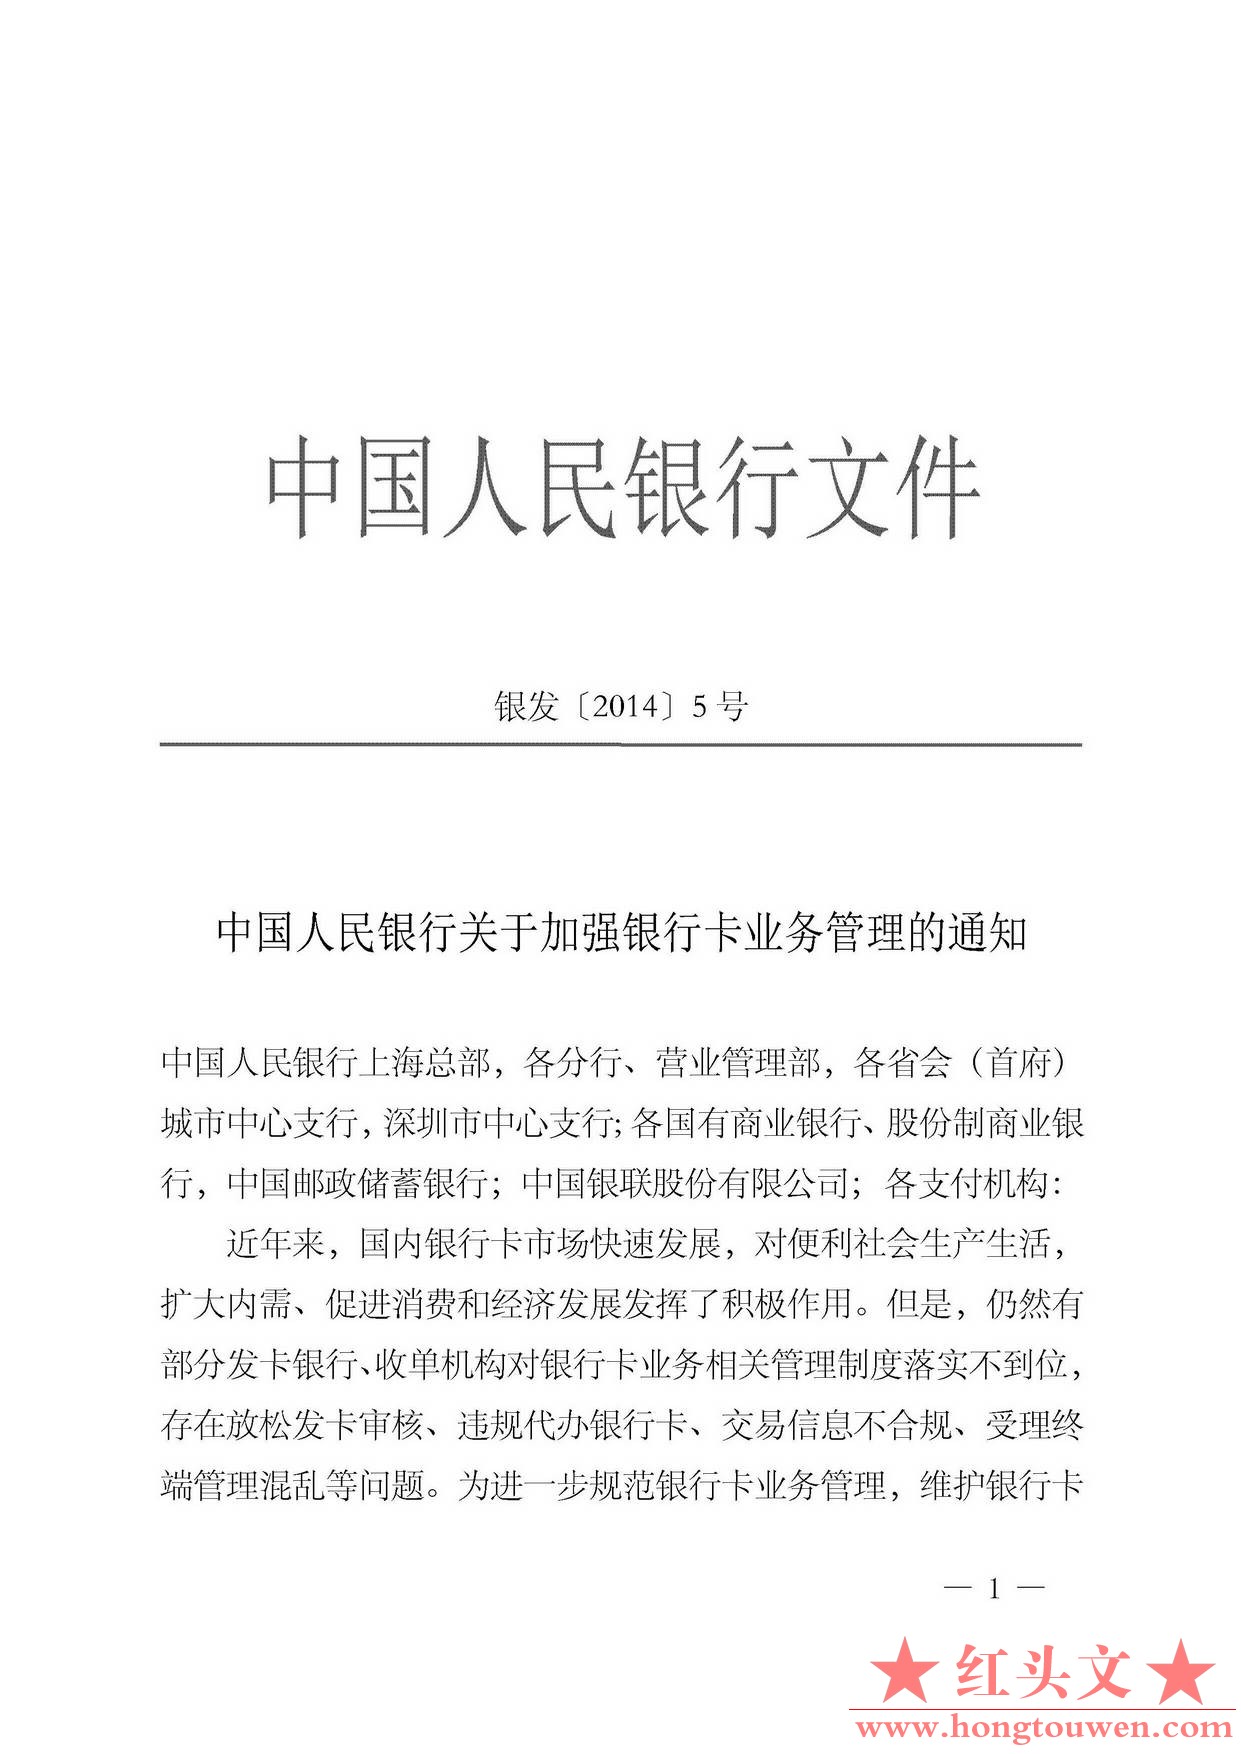 银发[2014]5号-中国人民银行关于加强银行卡业务管理的通知_页面_1.jpg